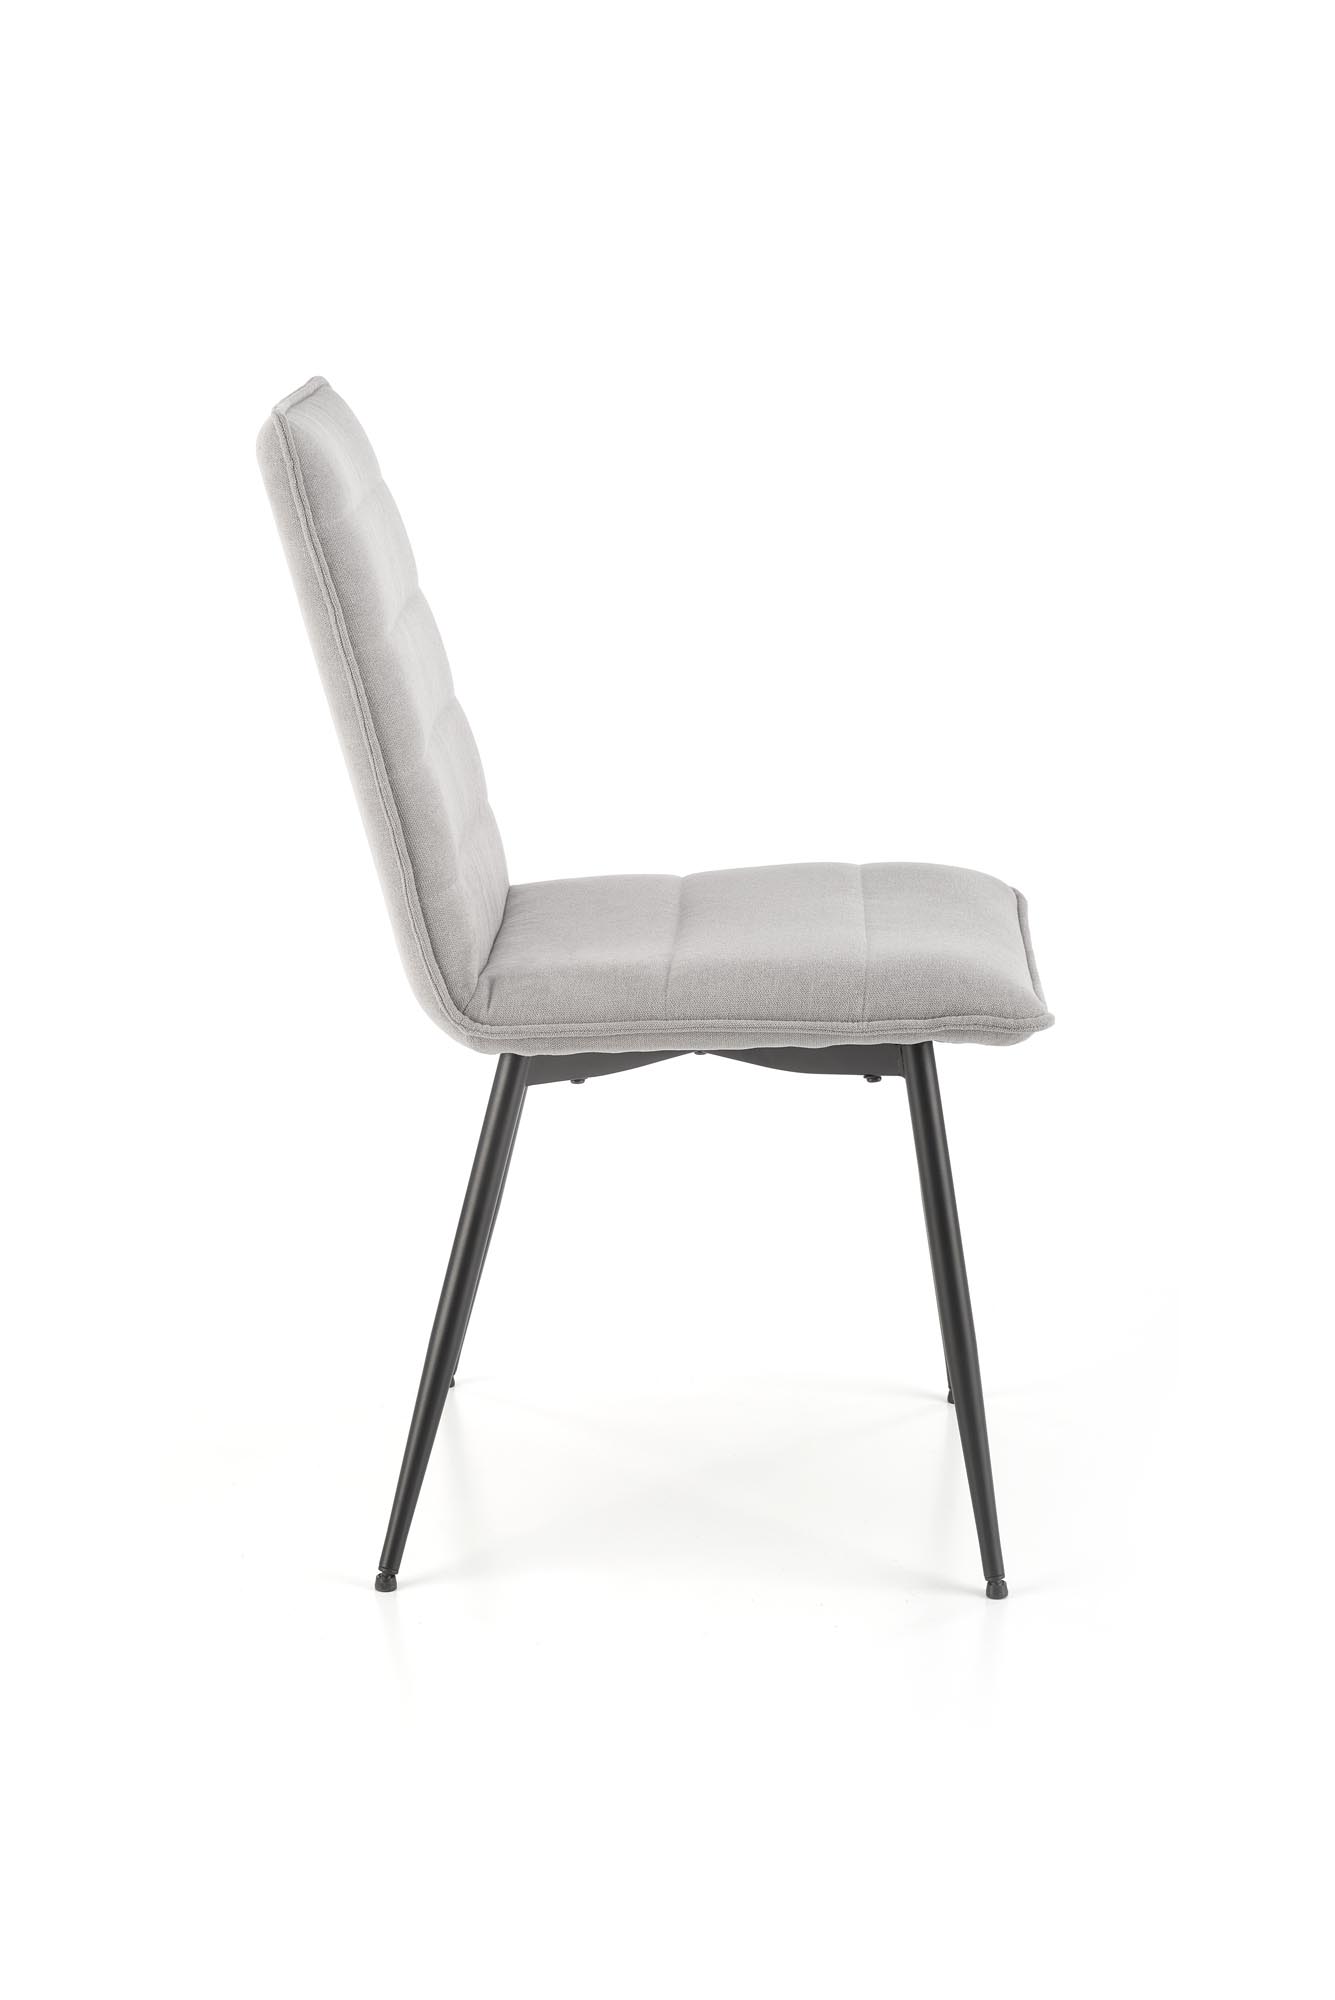 Krzeslo tapicerowane K493 - popielaty krzeslo tapicerowane k493 - popielaty